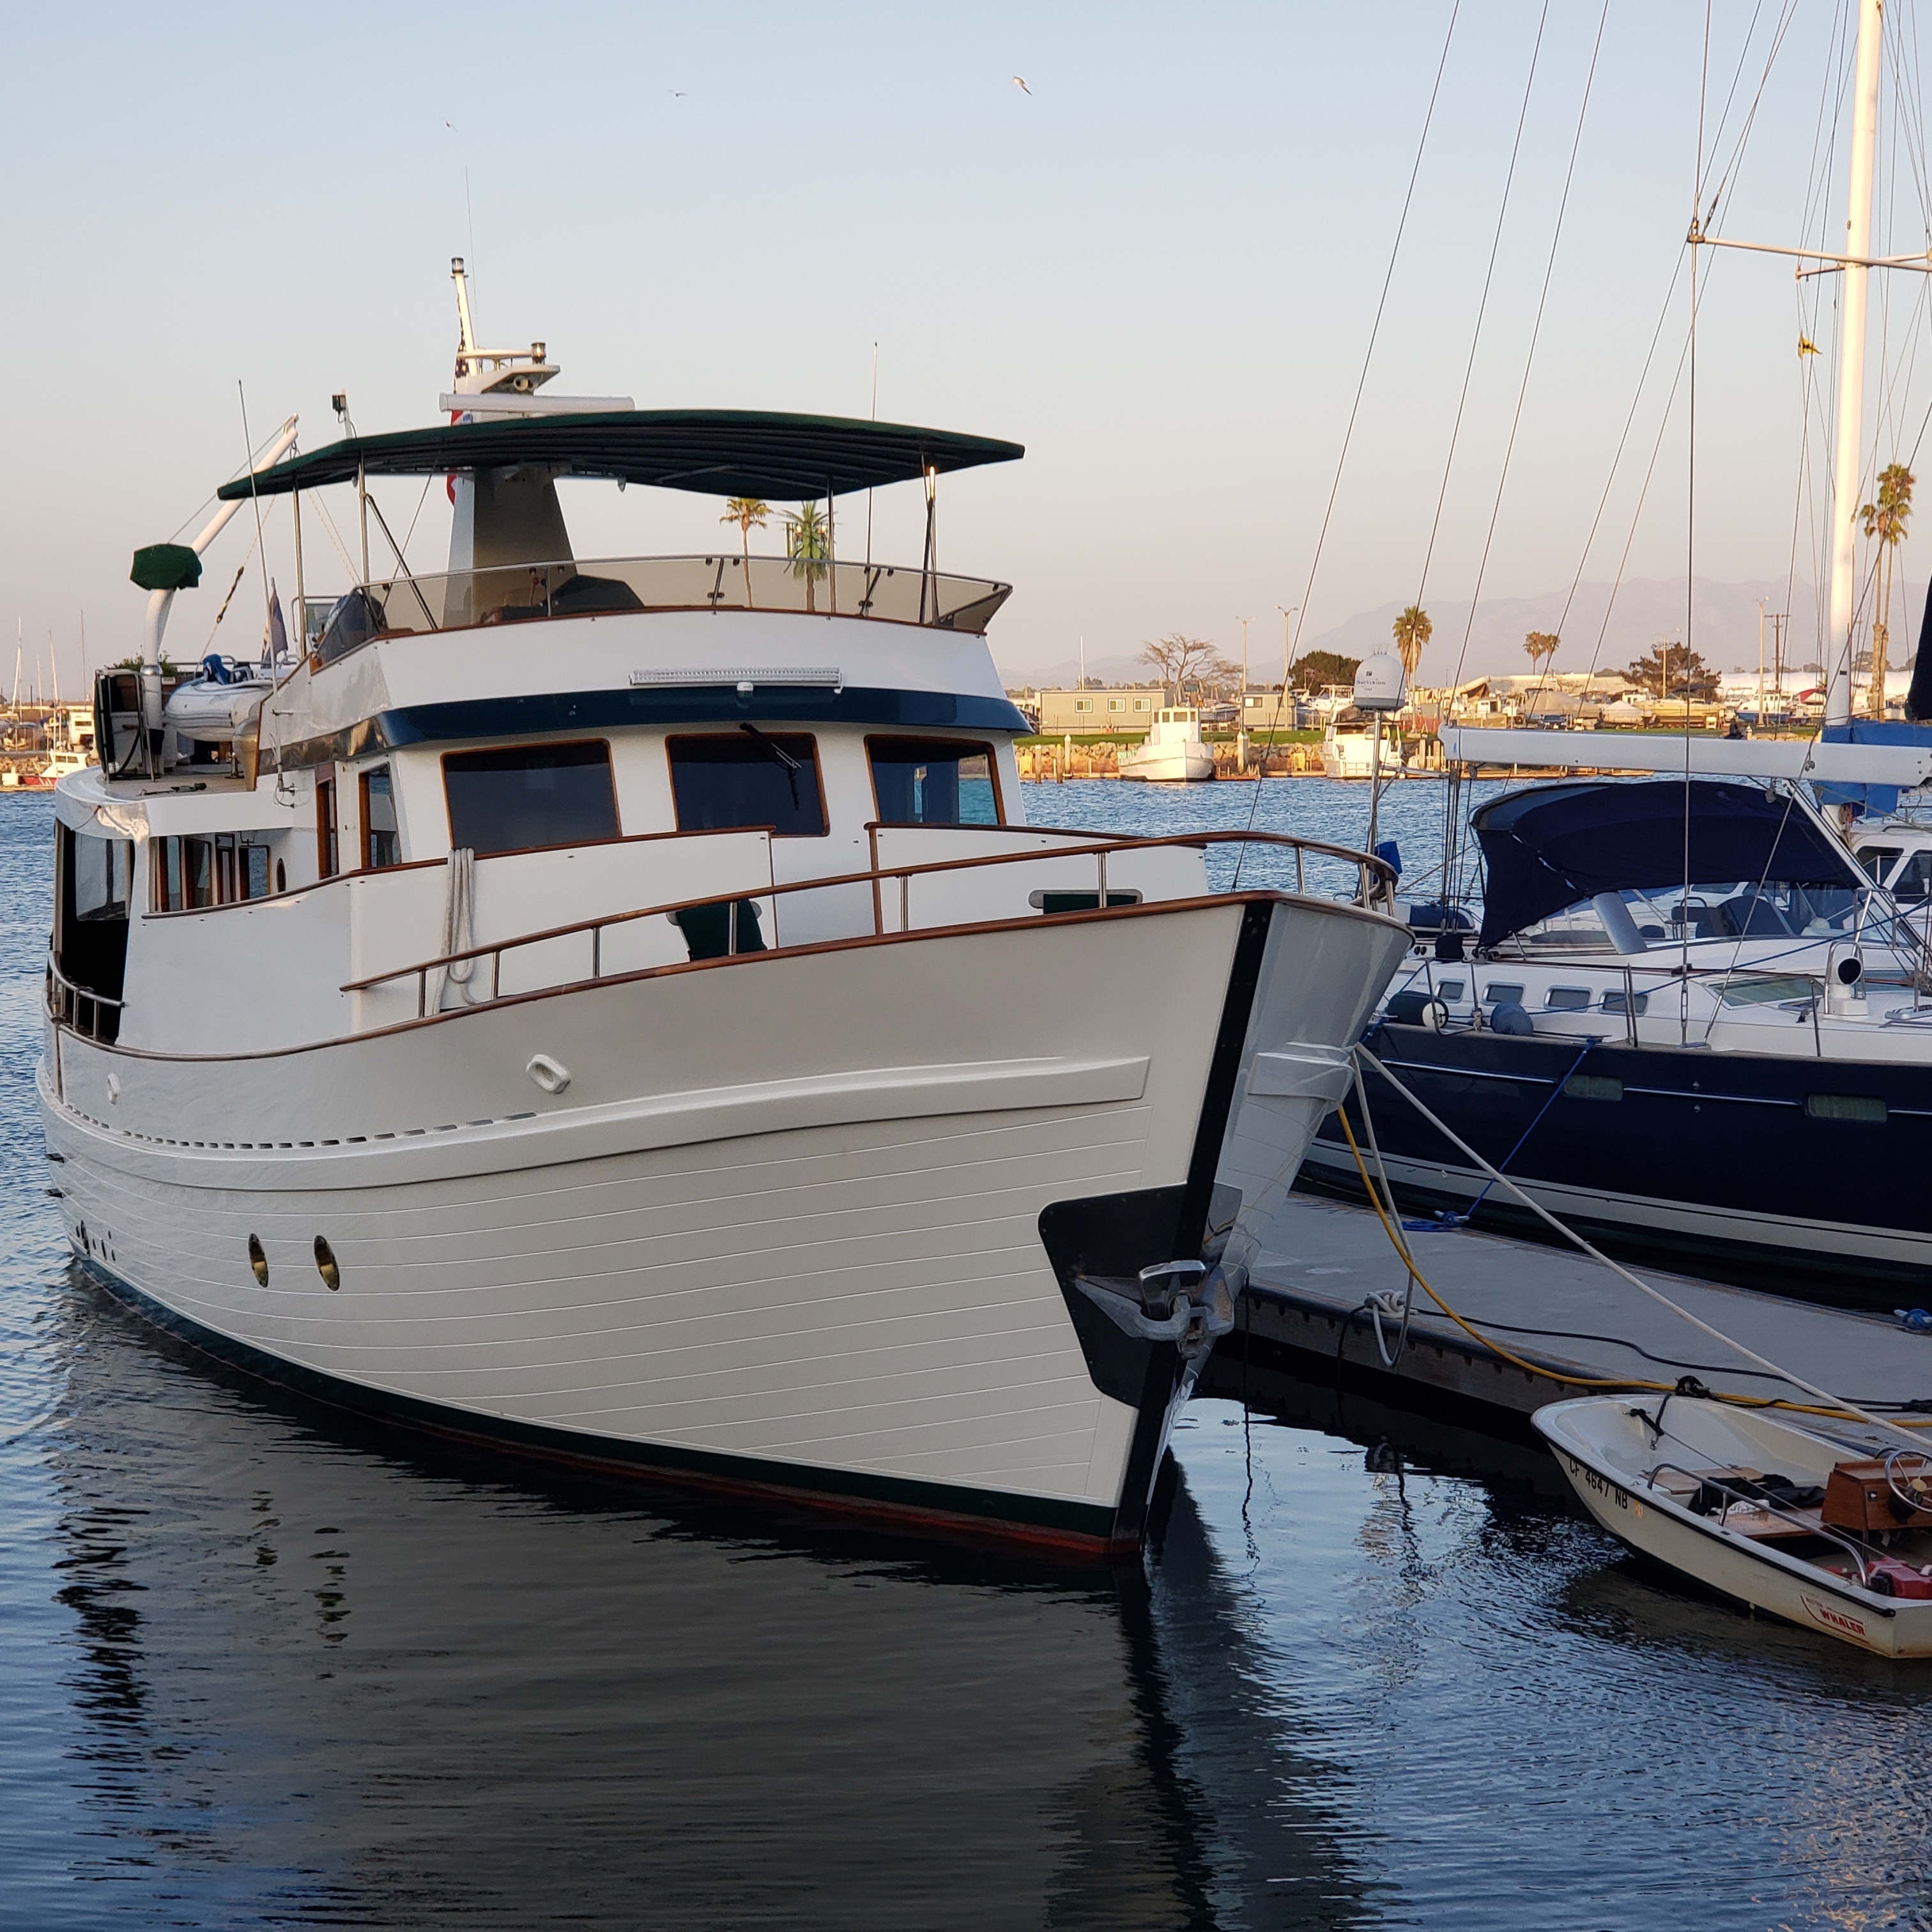 Ventura Boat Services